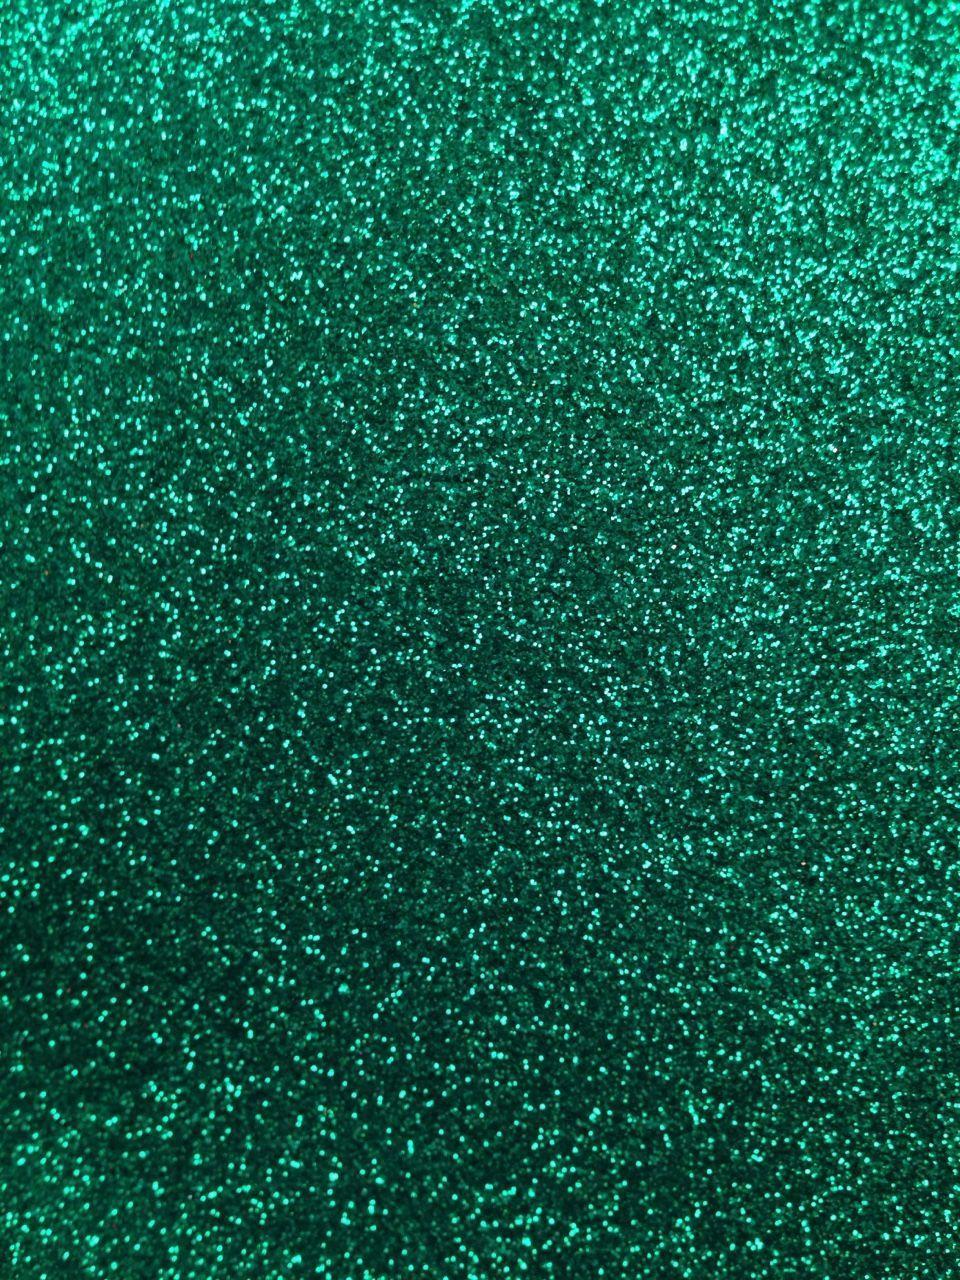 Glitter phone wallpaper sparkle background bling shimmer sparkles glitter  glittery green